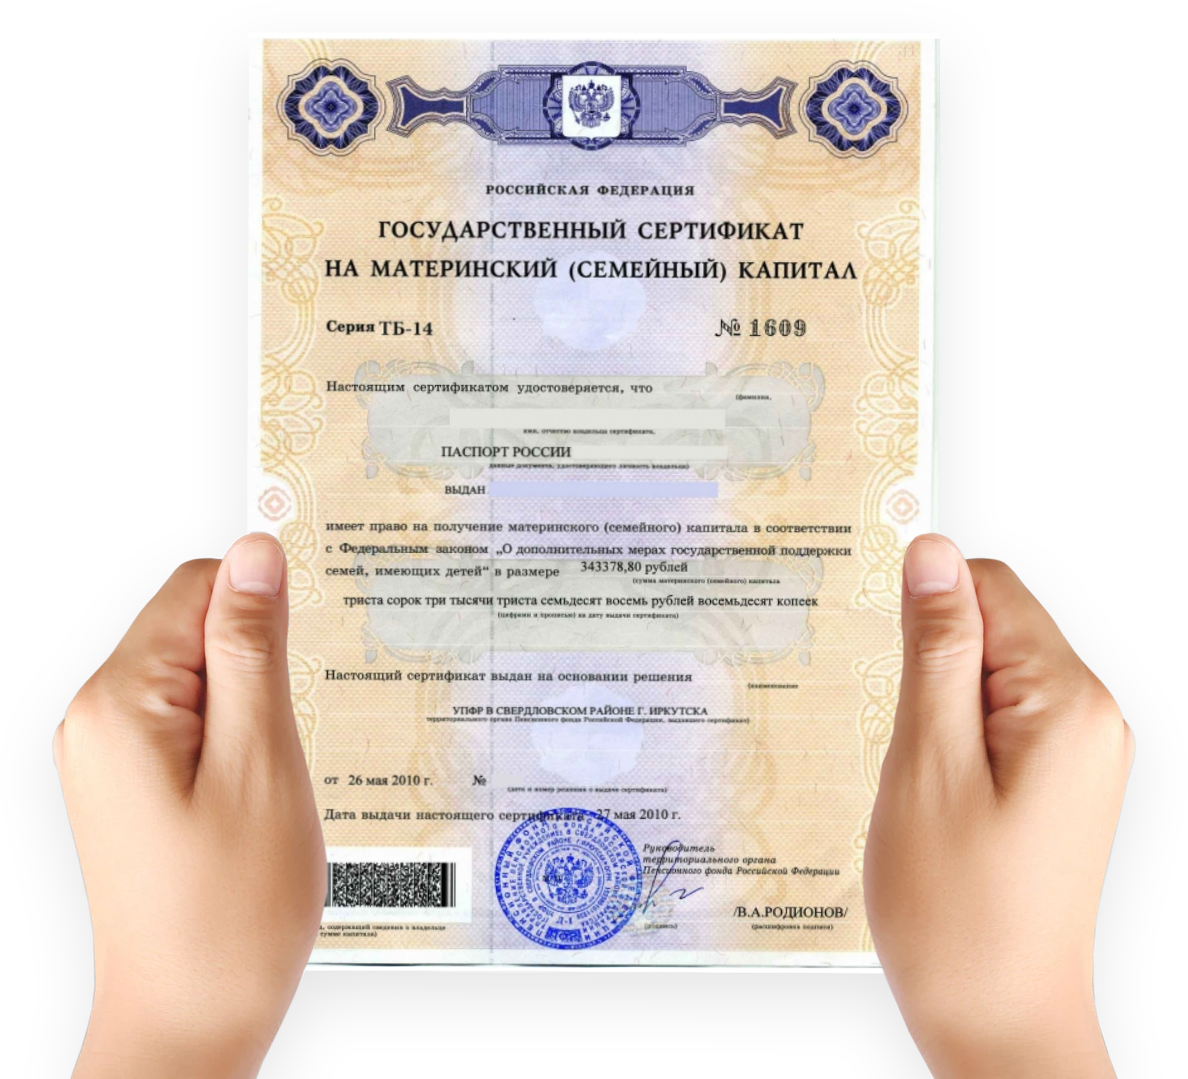 Выдача государственного сертификата на материнский капитал. Как выглядит сертификат на мат капитал. Как выглядит мат капитал сертификат в электронном виде. Как выглядит документ на материнский капитал. Материнский капитал на второго ребенка сертификат как выглядит.